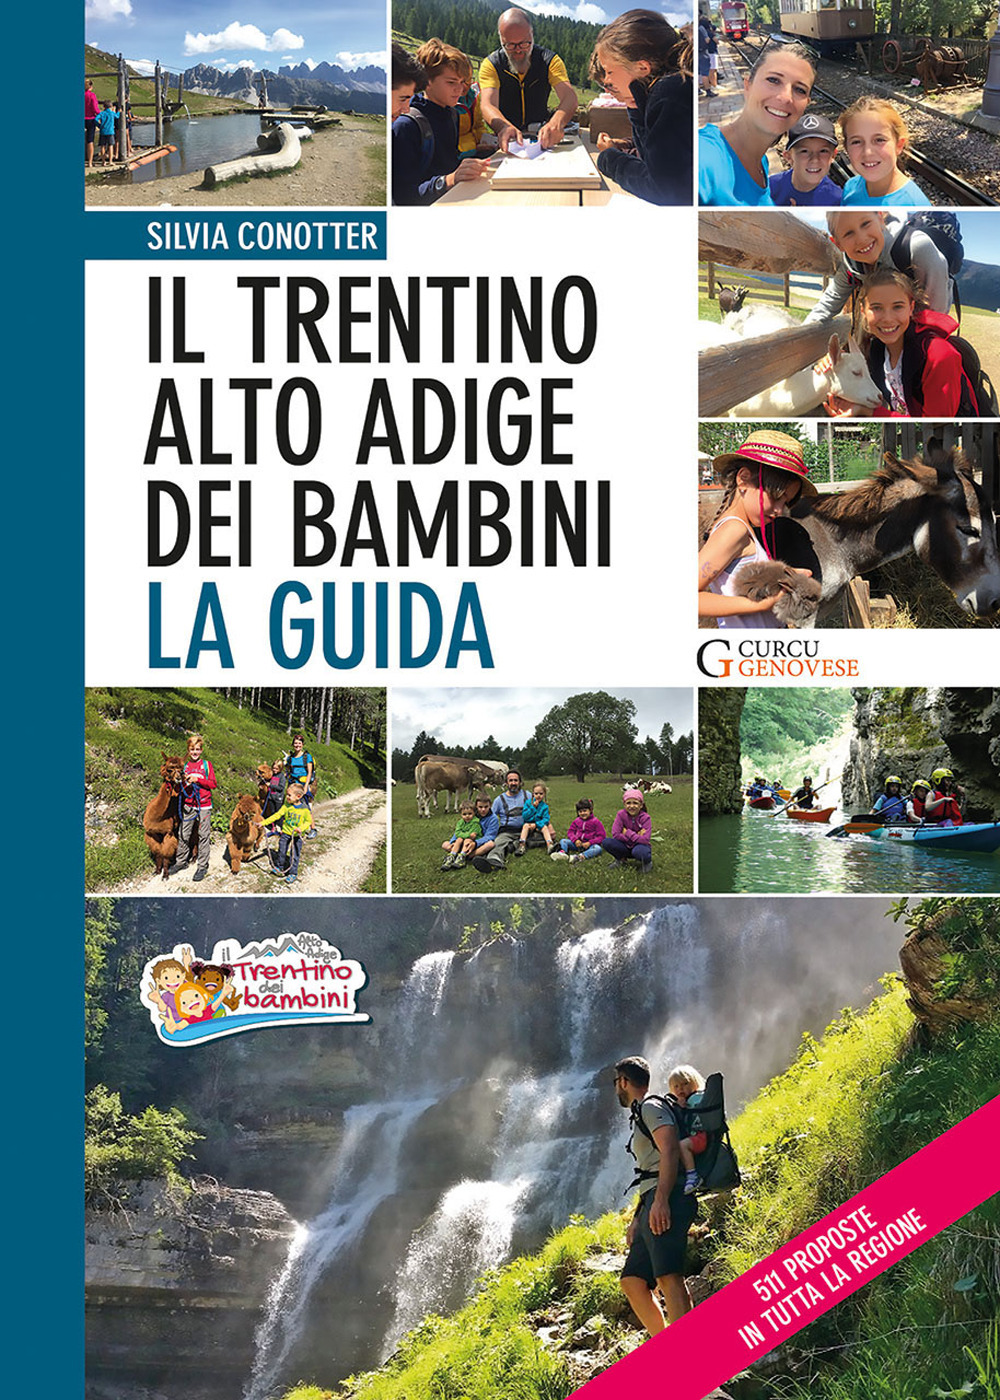 Il Trentino Alto Adige dei bambini. La guida. 511 proposte in tutta la regione